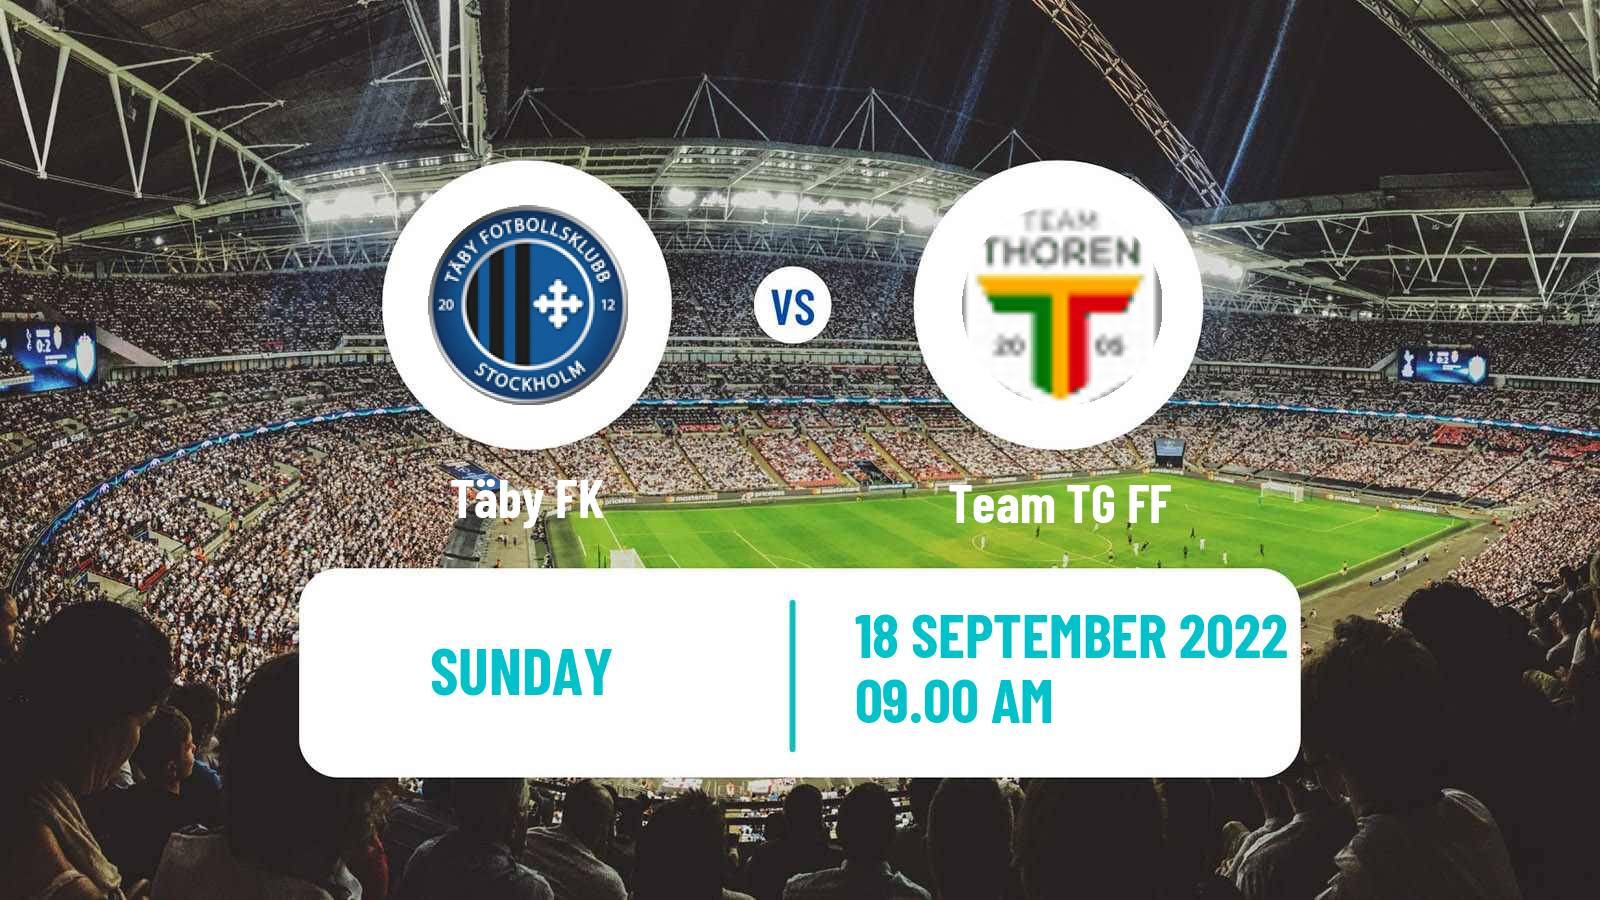 Soccer Swedish Division 1 Norra Täby - Team TG